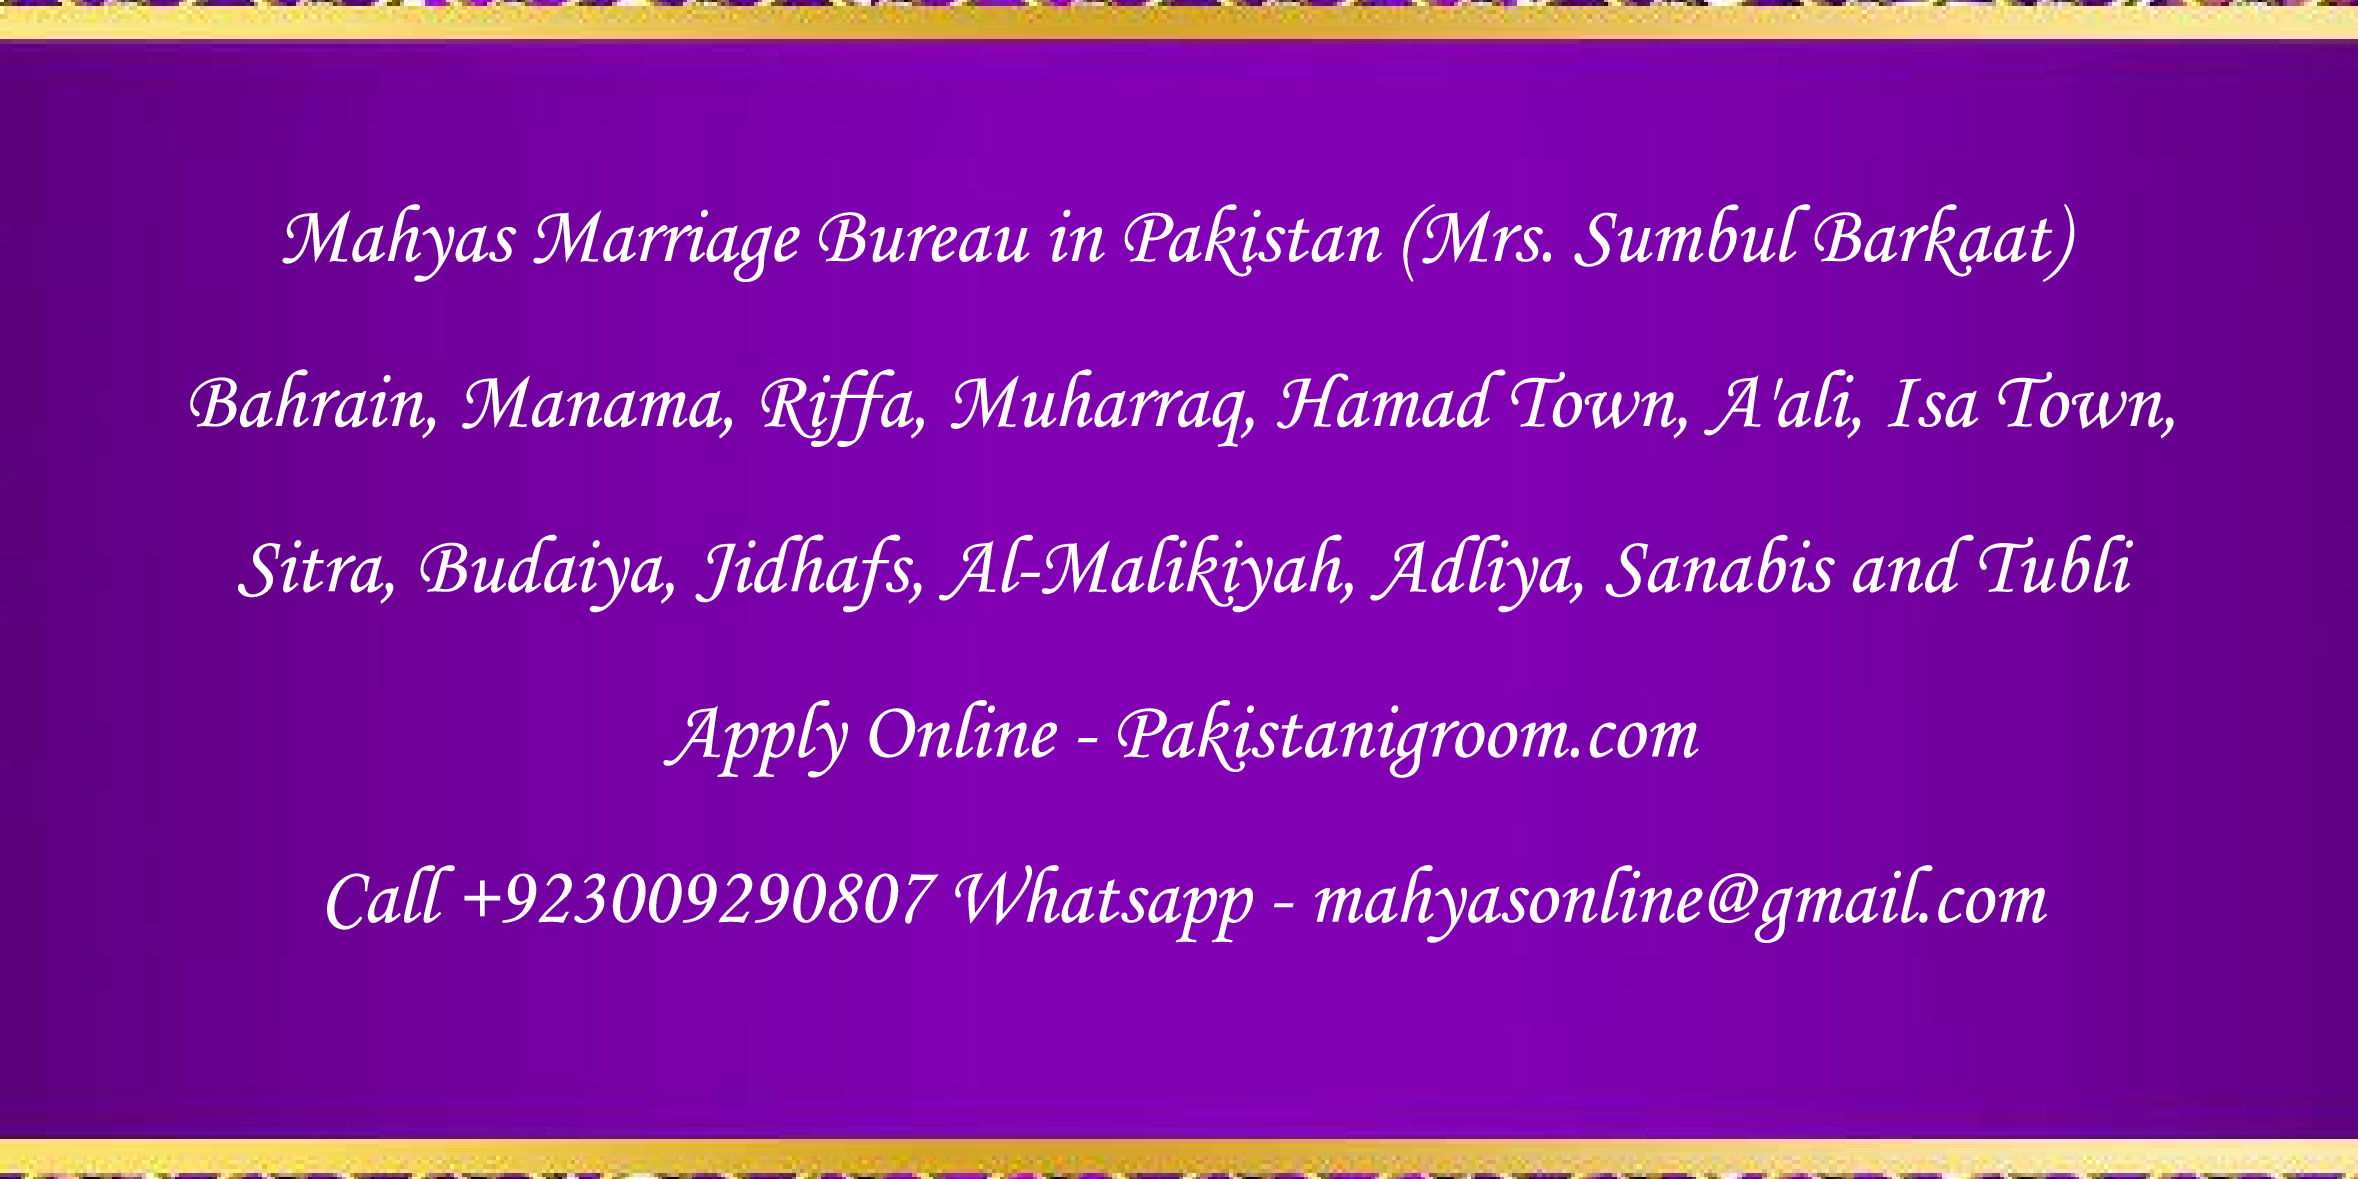 Mahyas-marriage-bureau-Karachi-Pakistan-for-Shia-Sunni-Remarriage-Divorce-Widow-Second-marriage-Punjabi-Pashto-Urdu-33.png